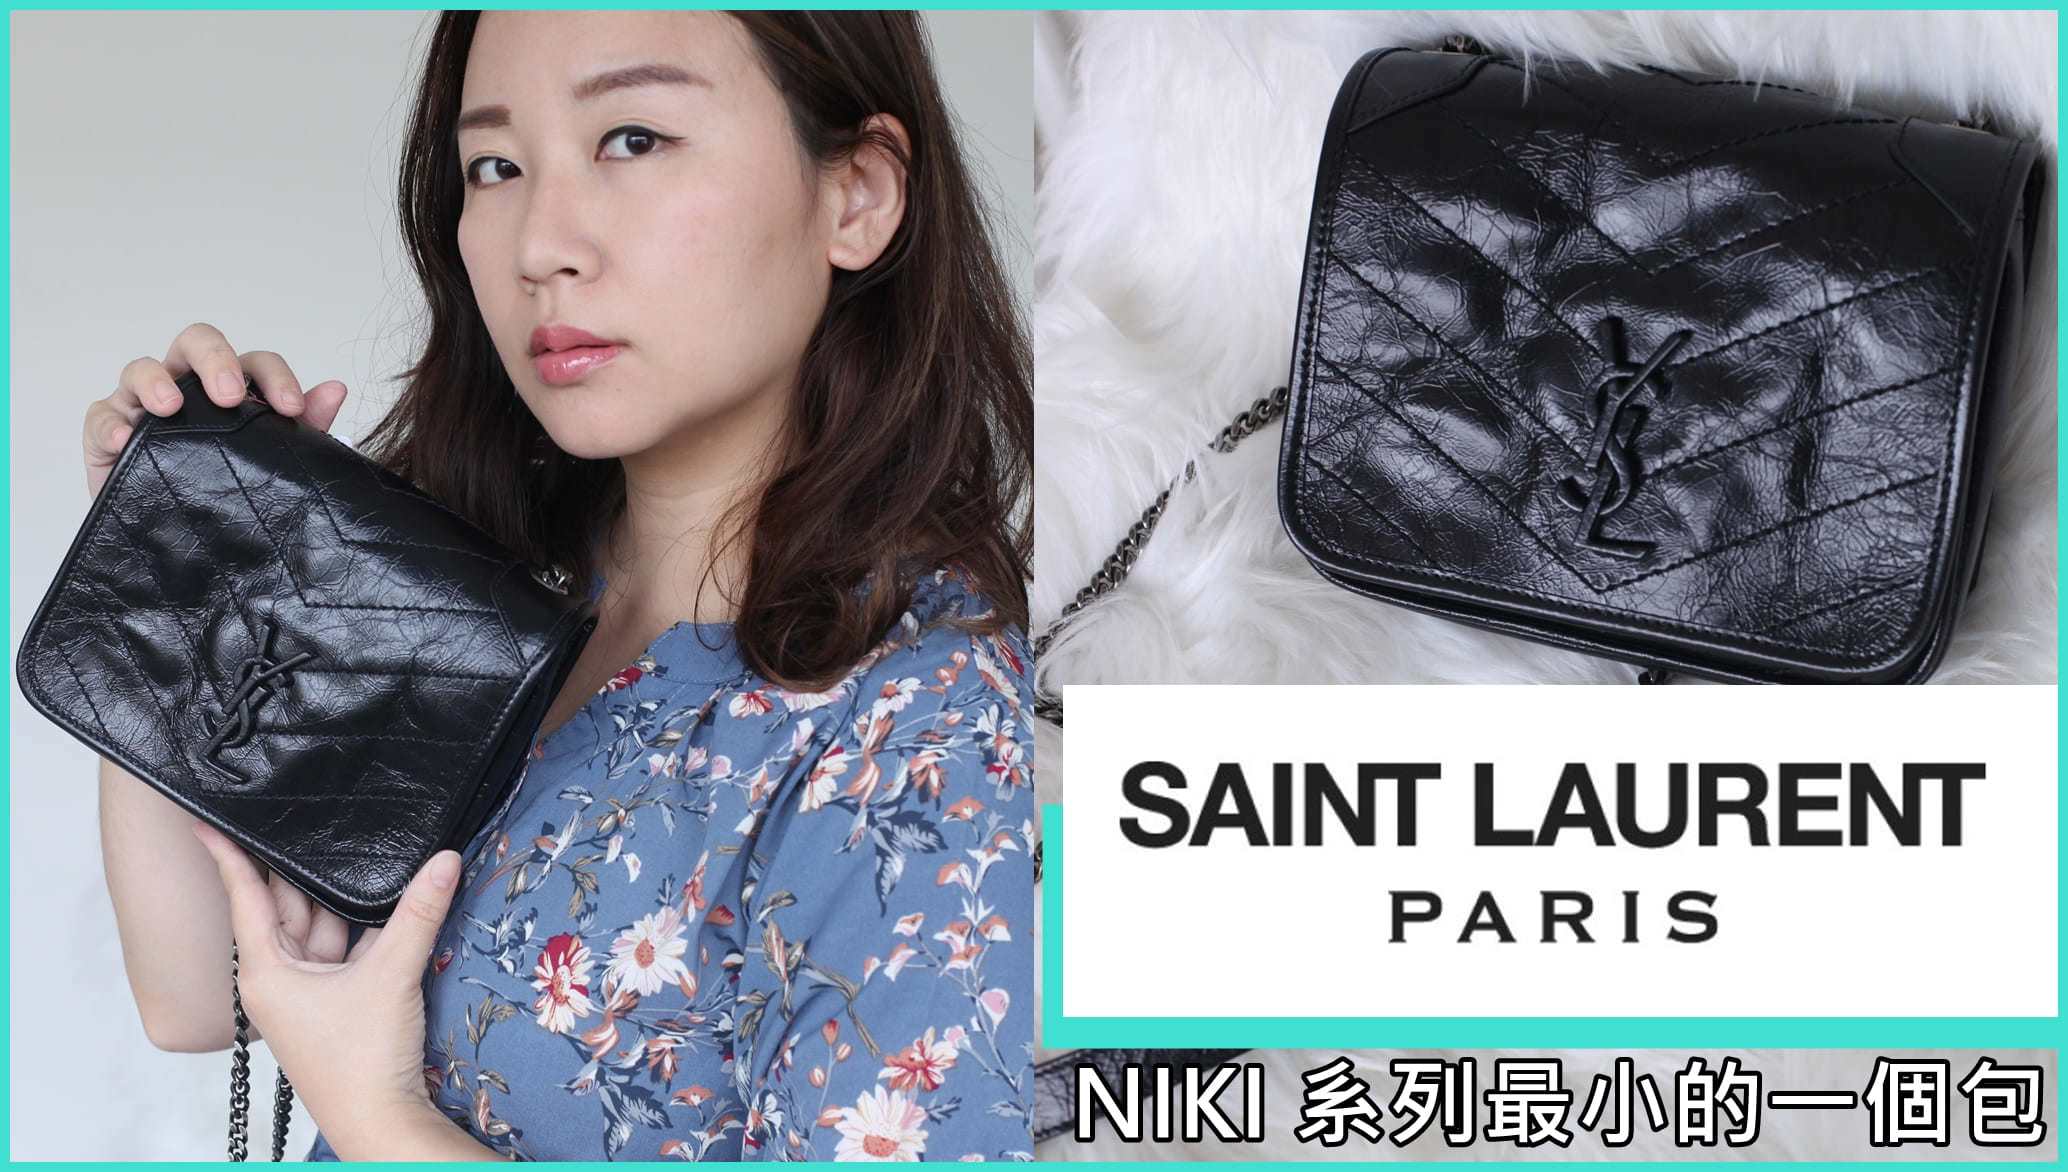 【影音開箱】YSL Saint Laurent niki mini bag 精品包開箱，新款小包跟niki系列長得不一樣呢 | 依娃精品開箱